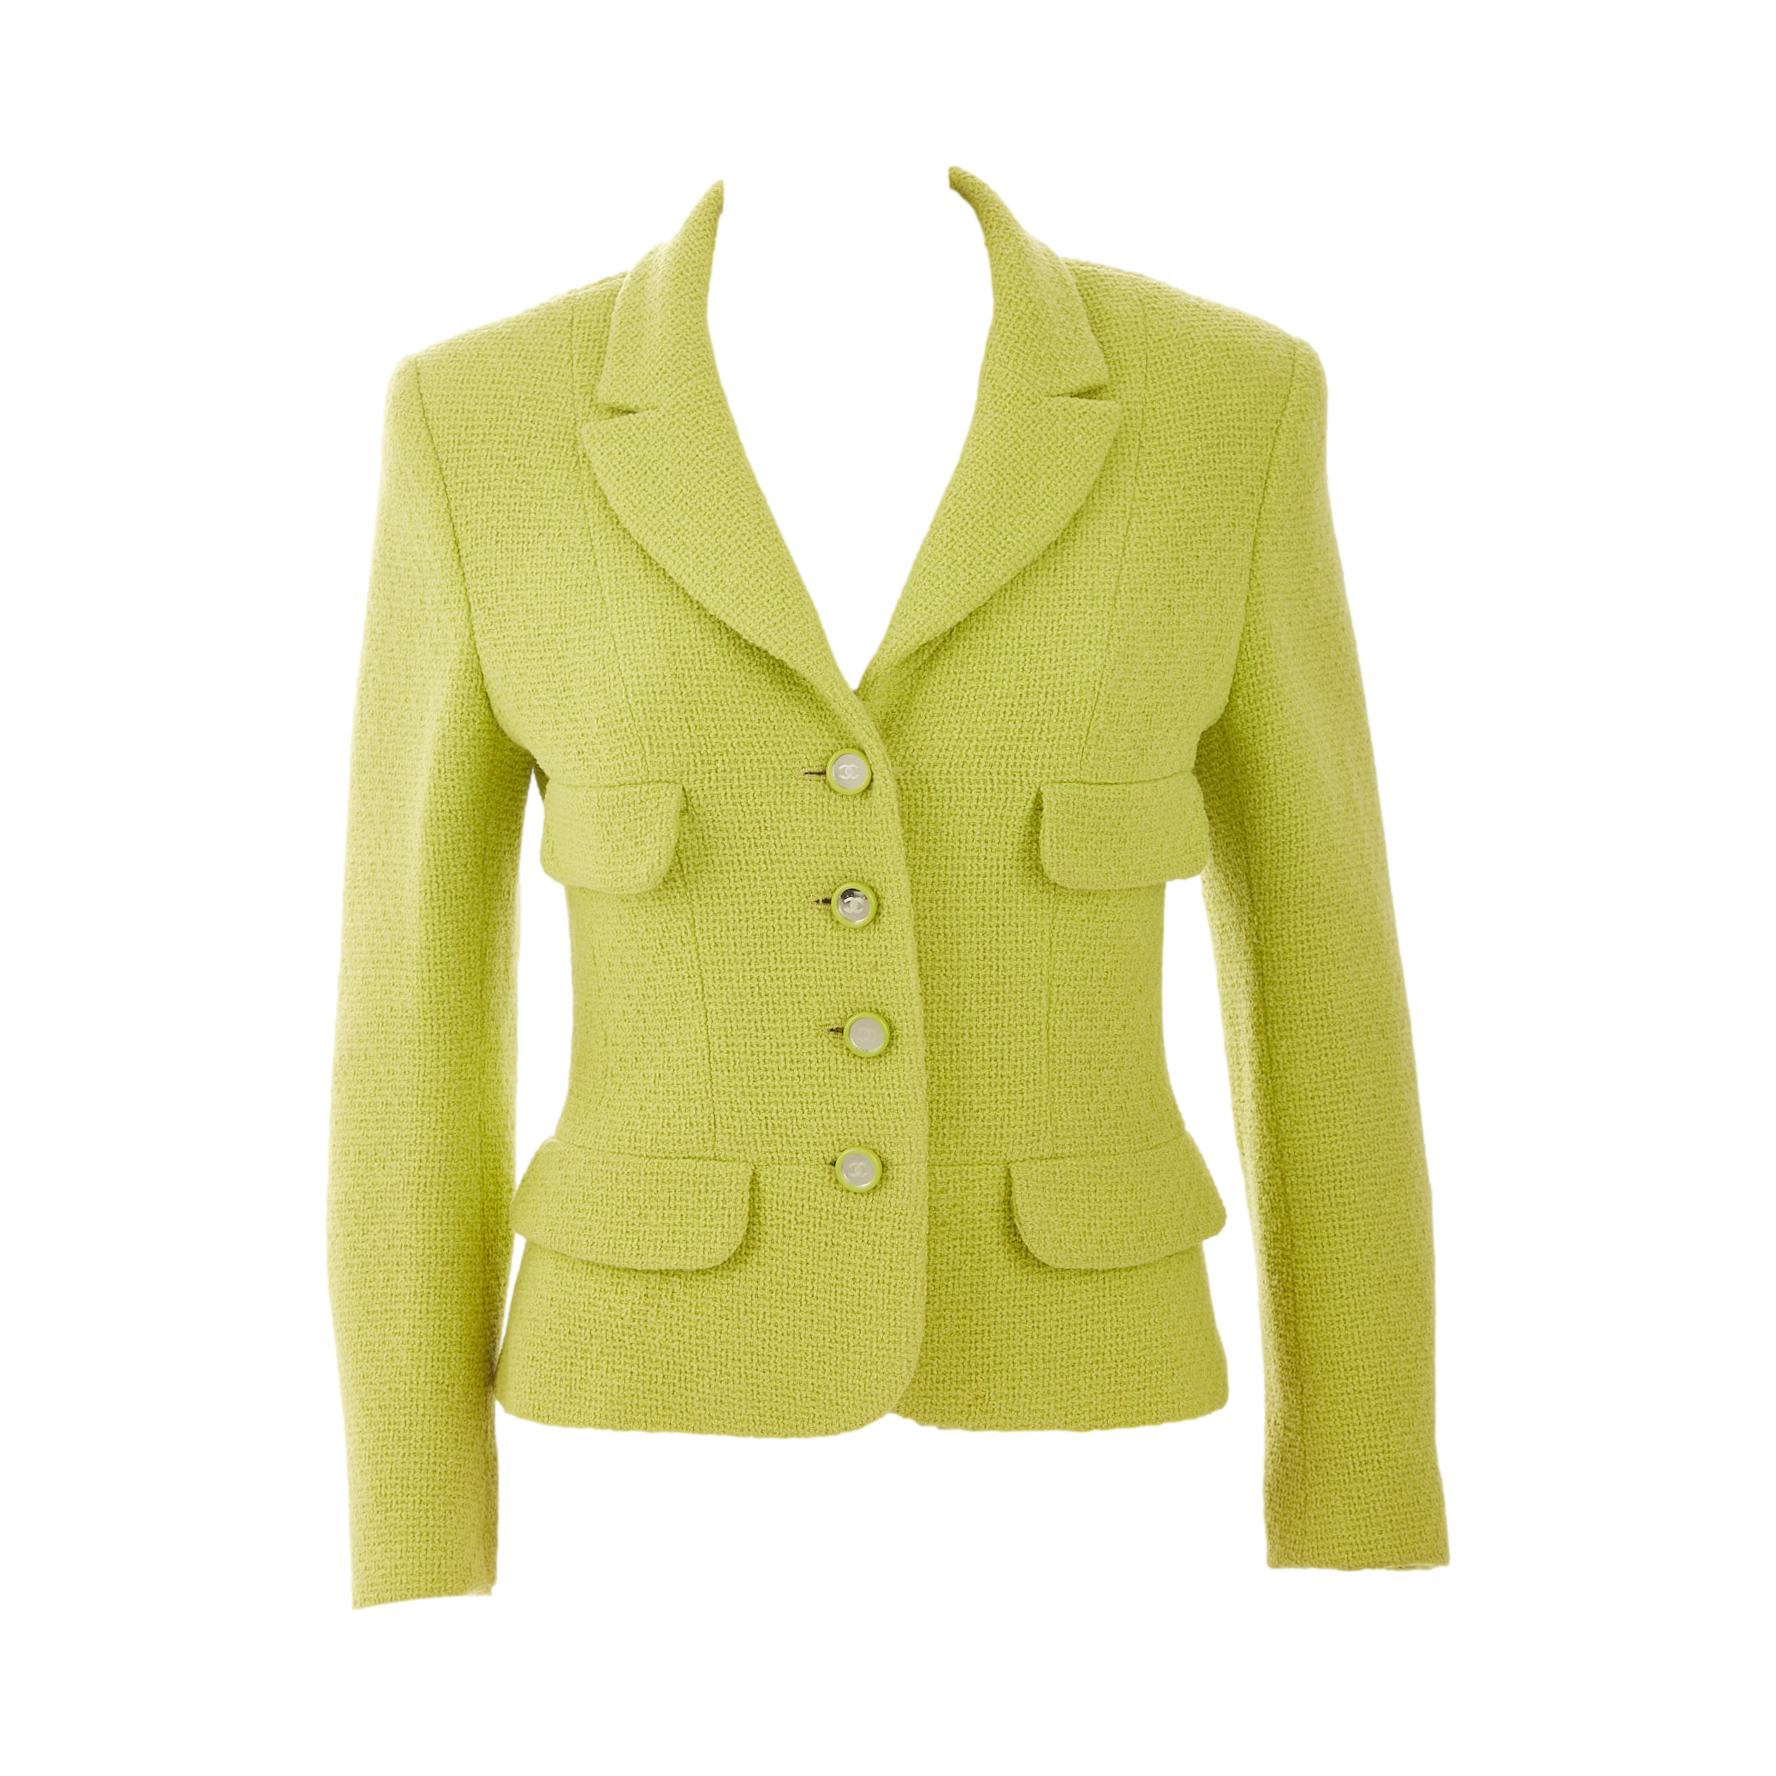 Chanel Vintage Green Tweed Suit